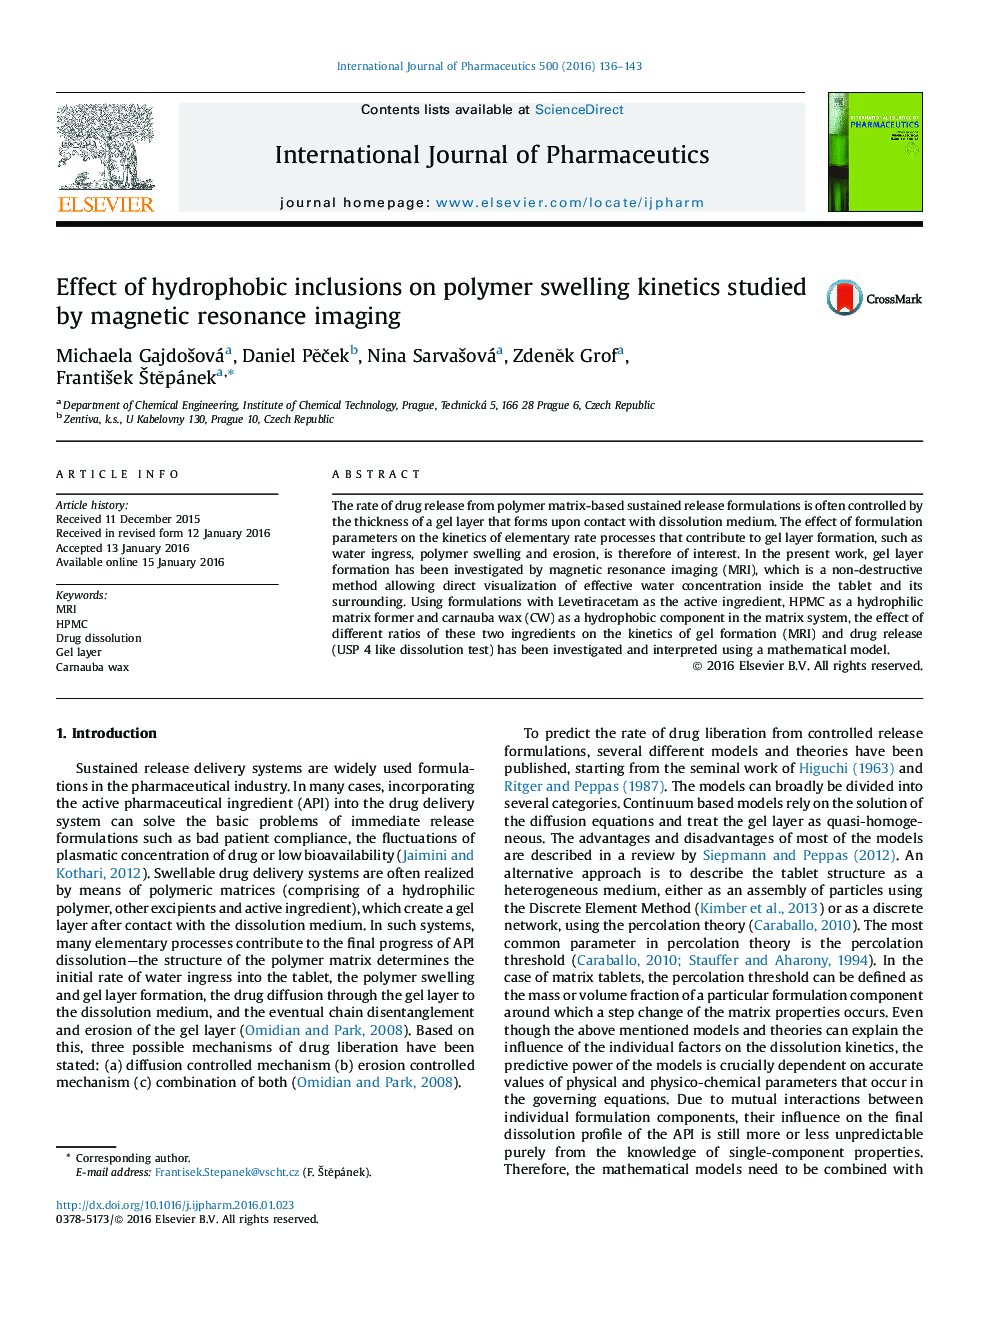 اثر ورودی های هیدروفوب بر روی سینتیک تورم پلیم مورد مطالعه با استفاده از تصویربرداری رزونانس مغناطیسی 